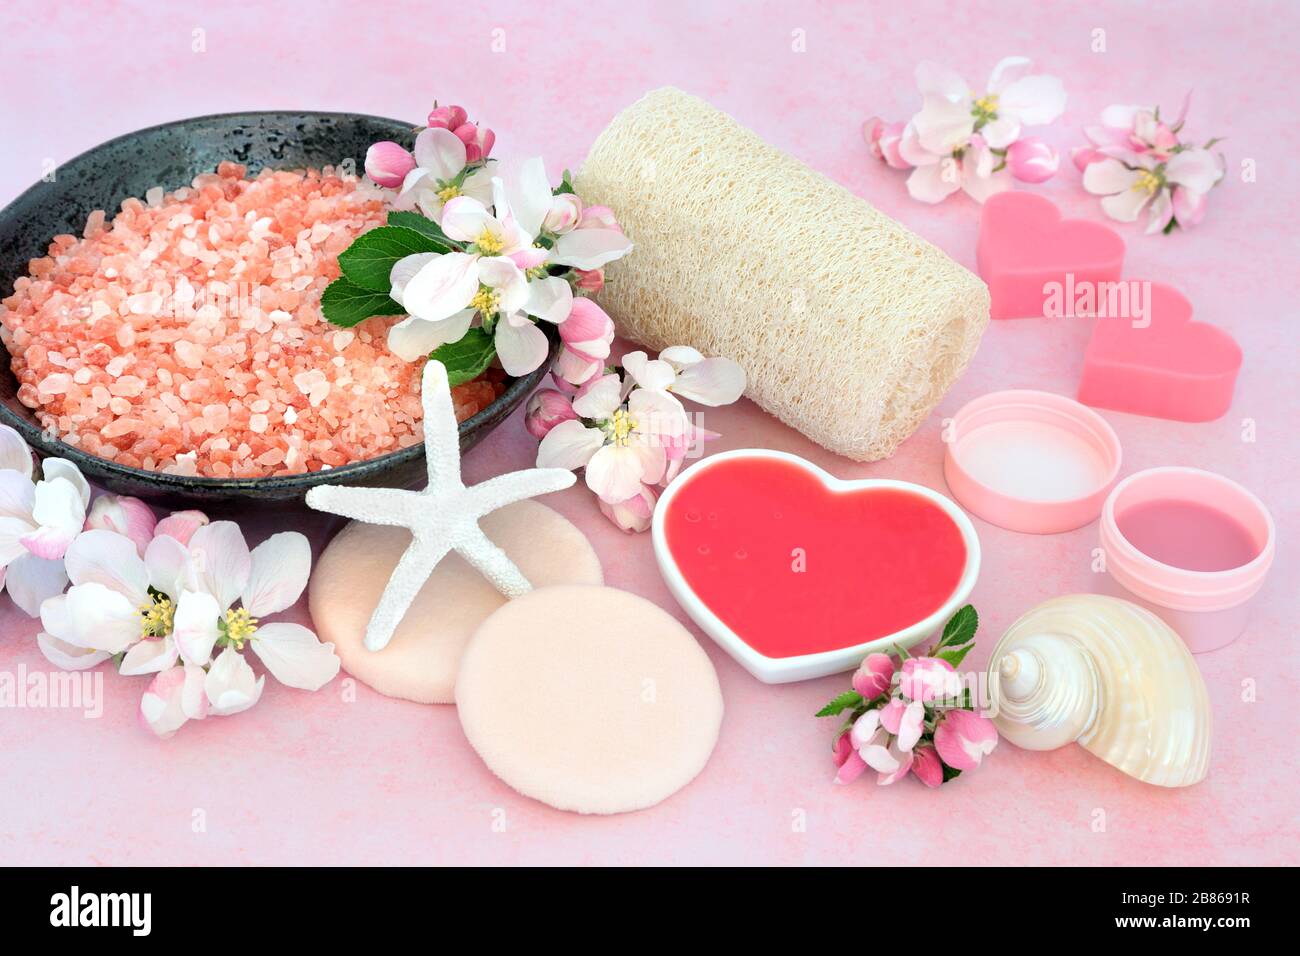 Trattamento di bellezza vegan skincare spa con prodotti da fogliare e detergenti con fiori di mela su rosa. Anti invecchiamento del concetto di assistenza sanitaria. Foto Stock